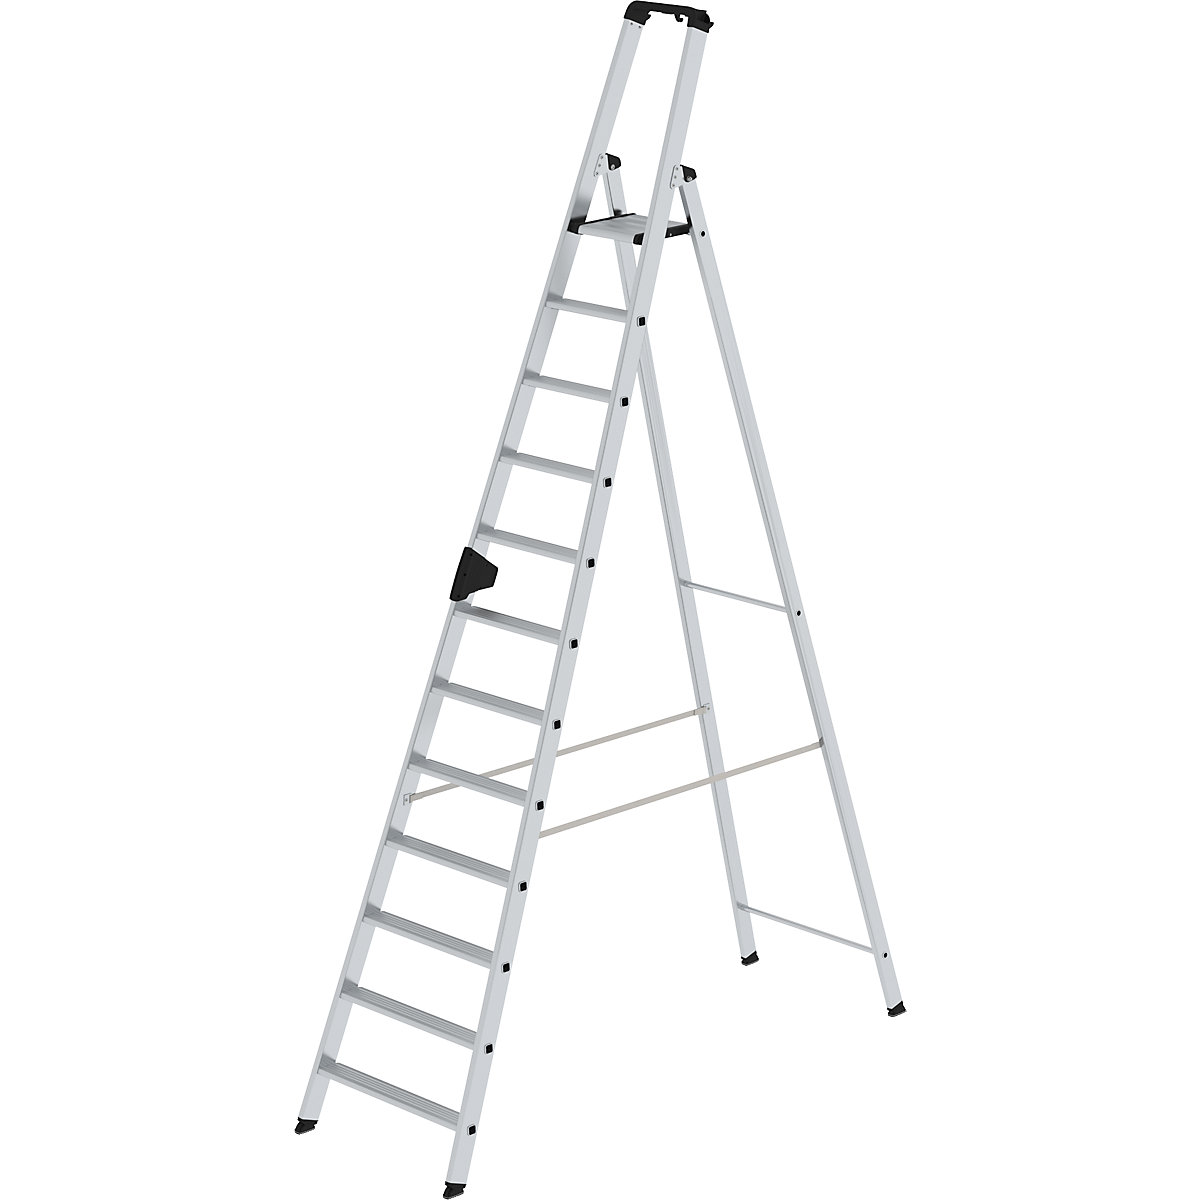 Escalera tipo tijera de peldaños planos, ascenso por un lado – MUNK, modelo extra cómodo con ergo-pad®, 12 escalones-12